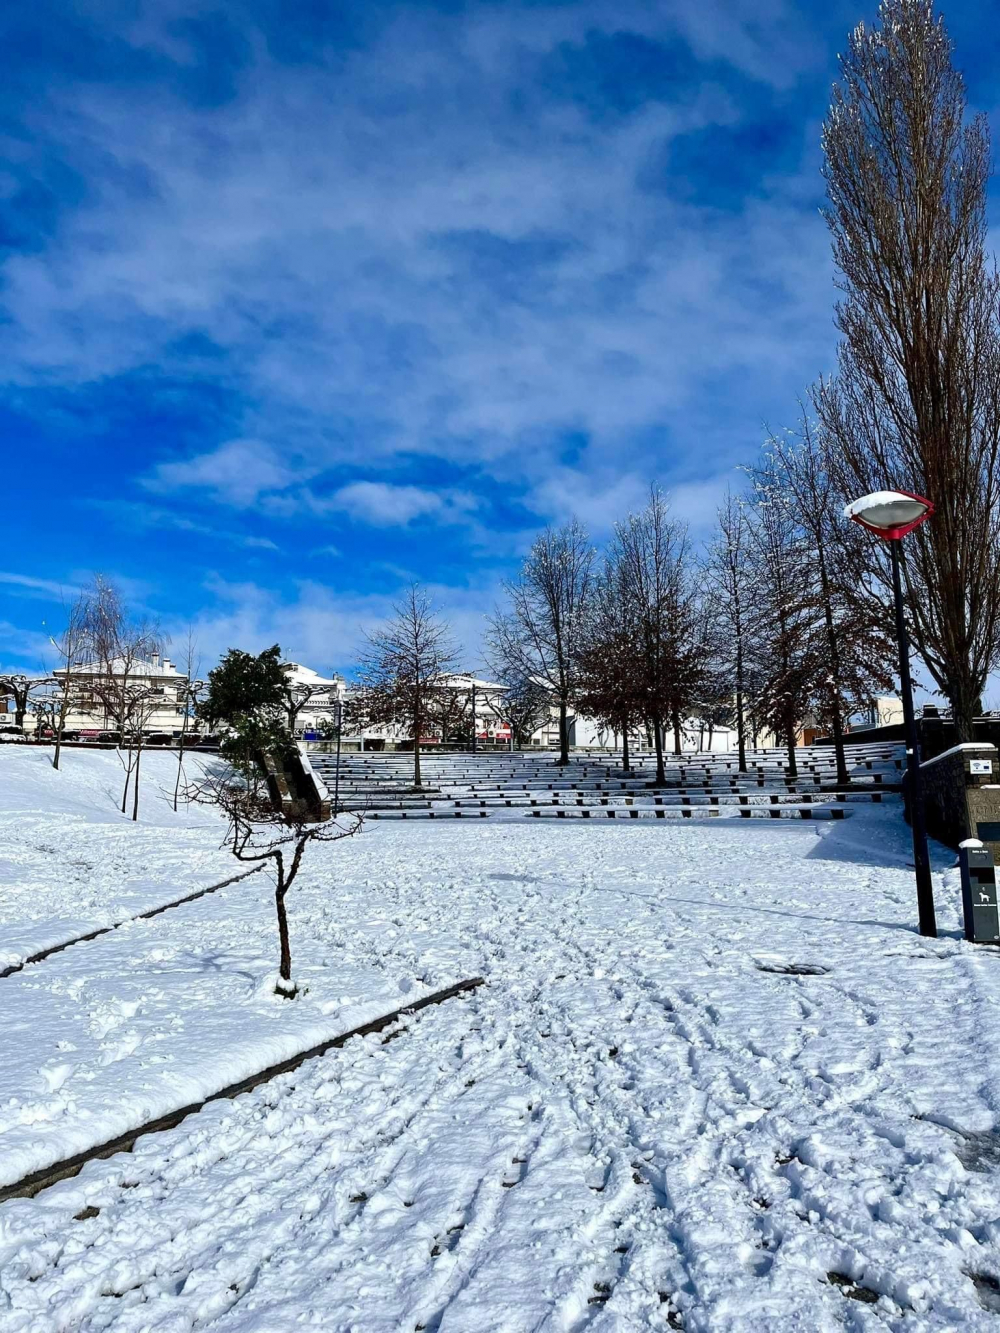 Neve obrigou a encerrar escolas e condicionou ligações viárias em Mogadouro